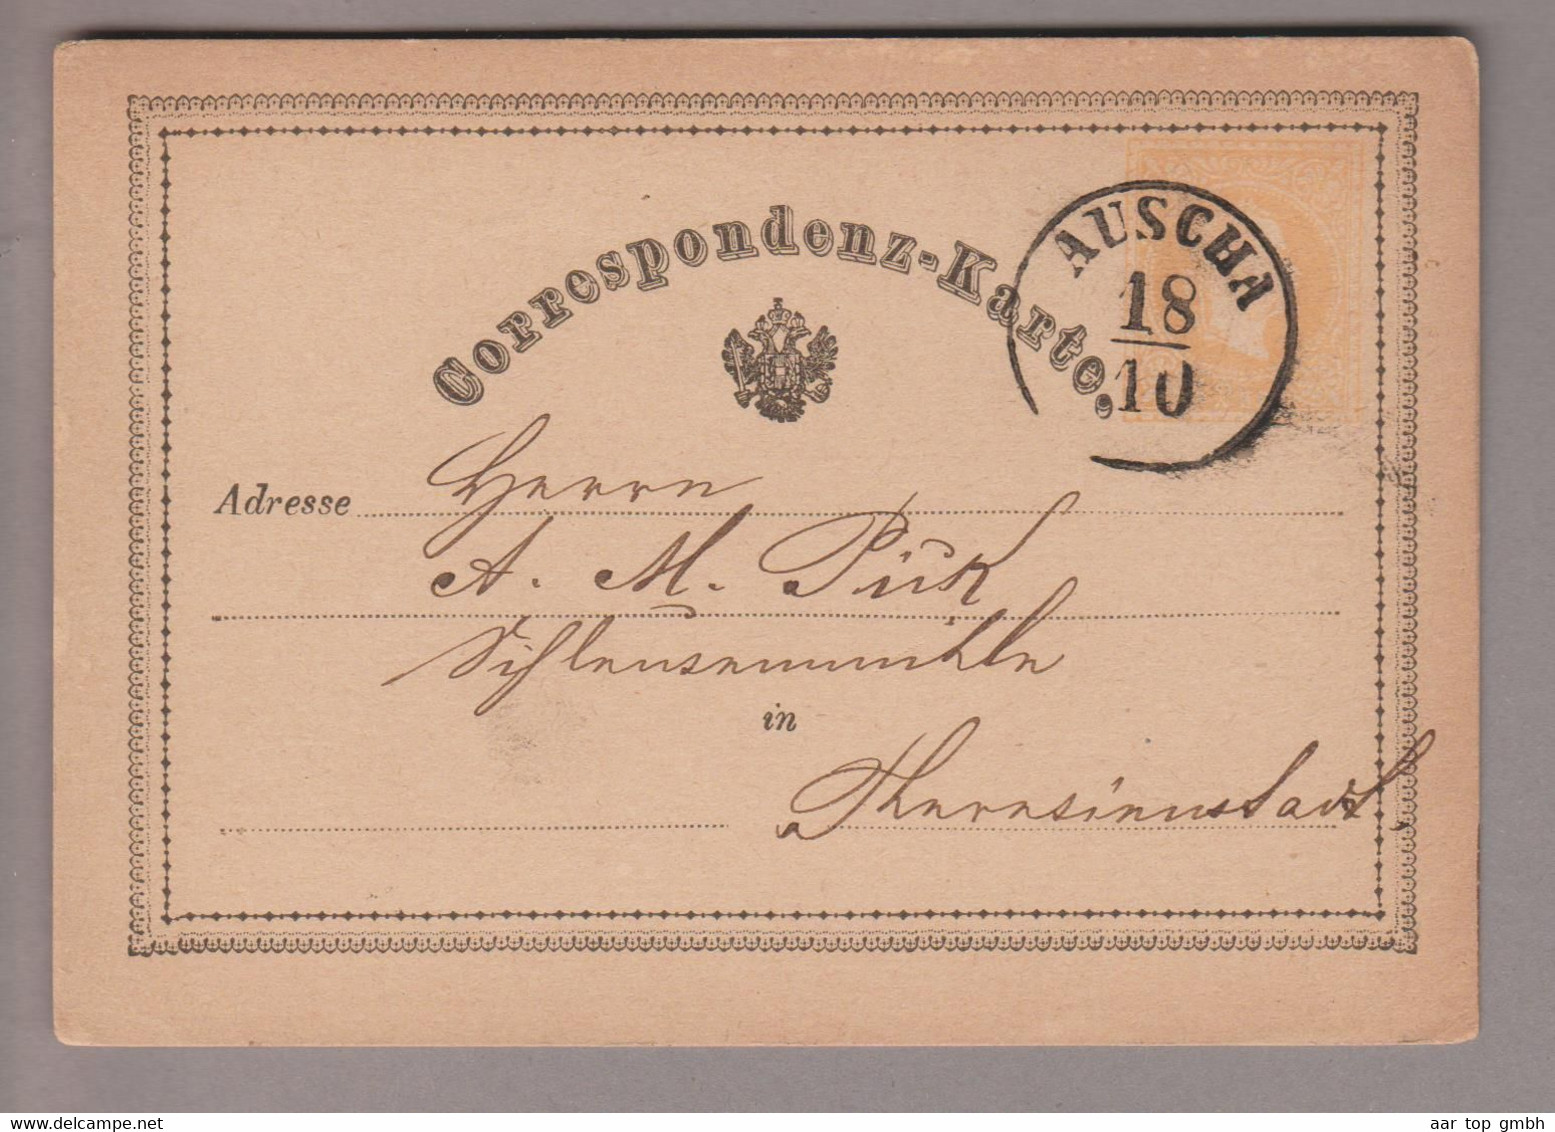 Tschechien Heimat Auscha 1874-10-18 2 Kr. Ganzsache Nach Theresienstadt - ...-1918 Prephilately